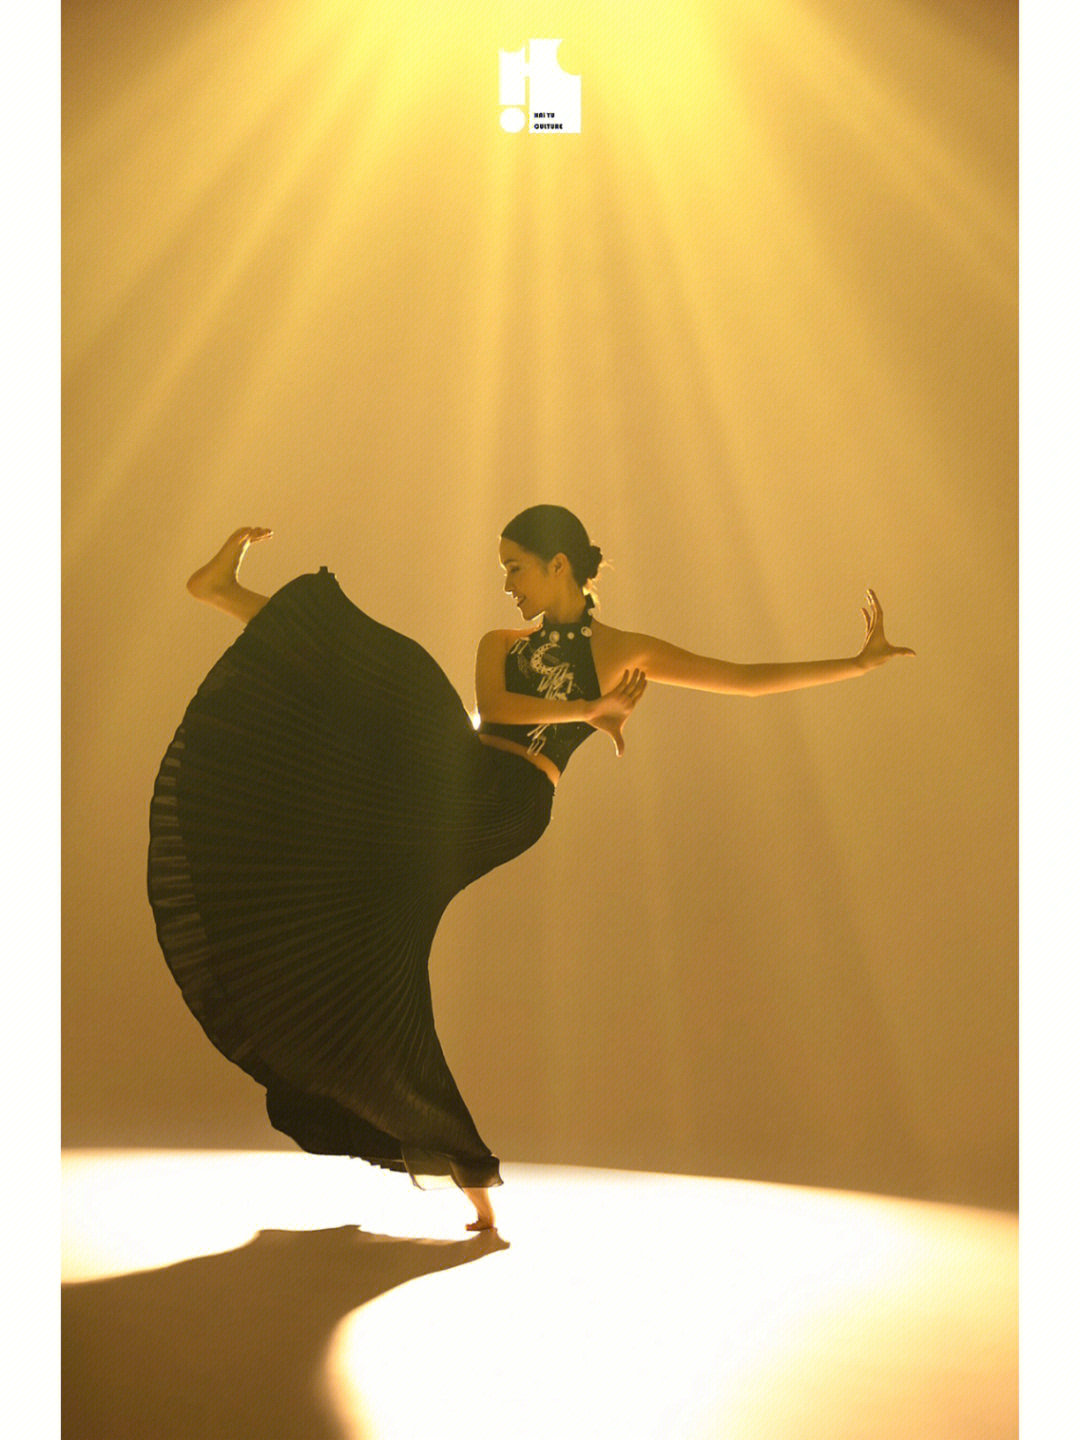 傣族舞蹈造型摆拍图片